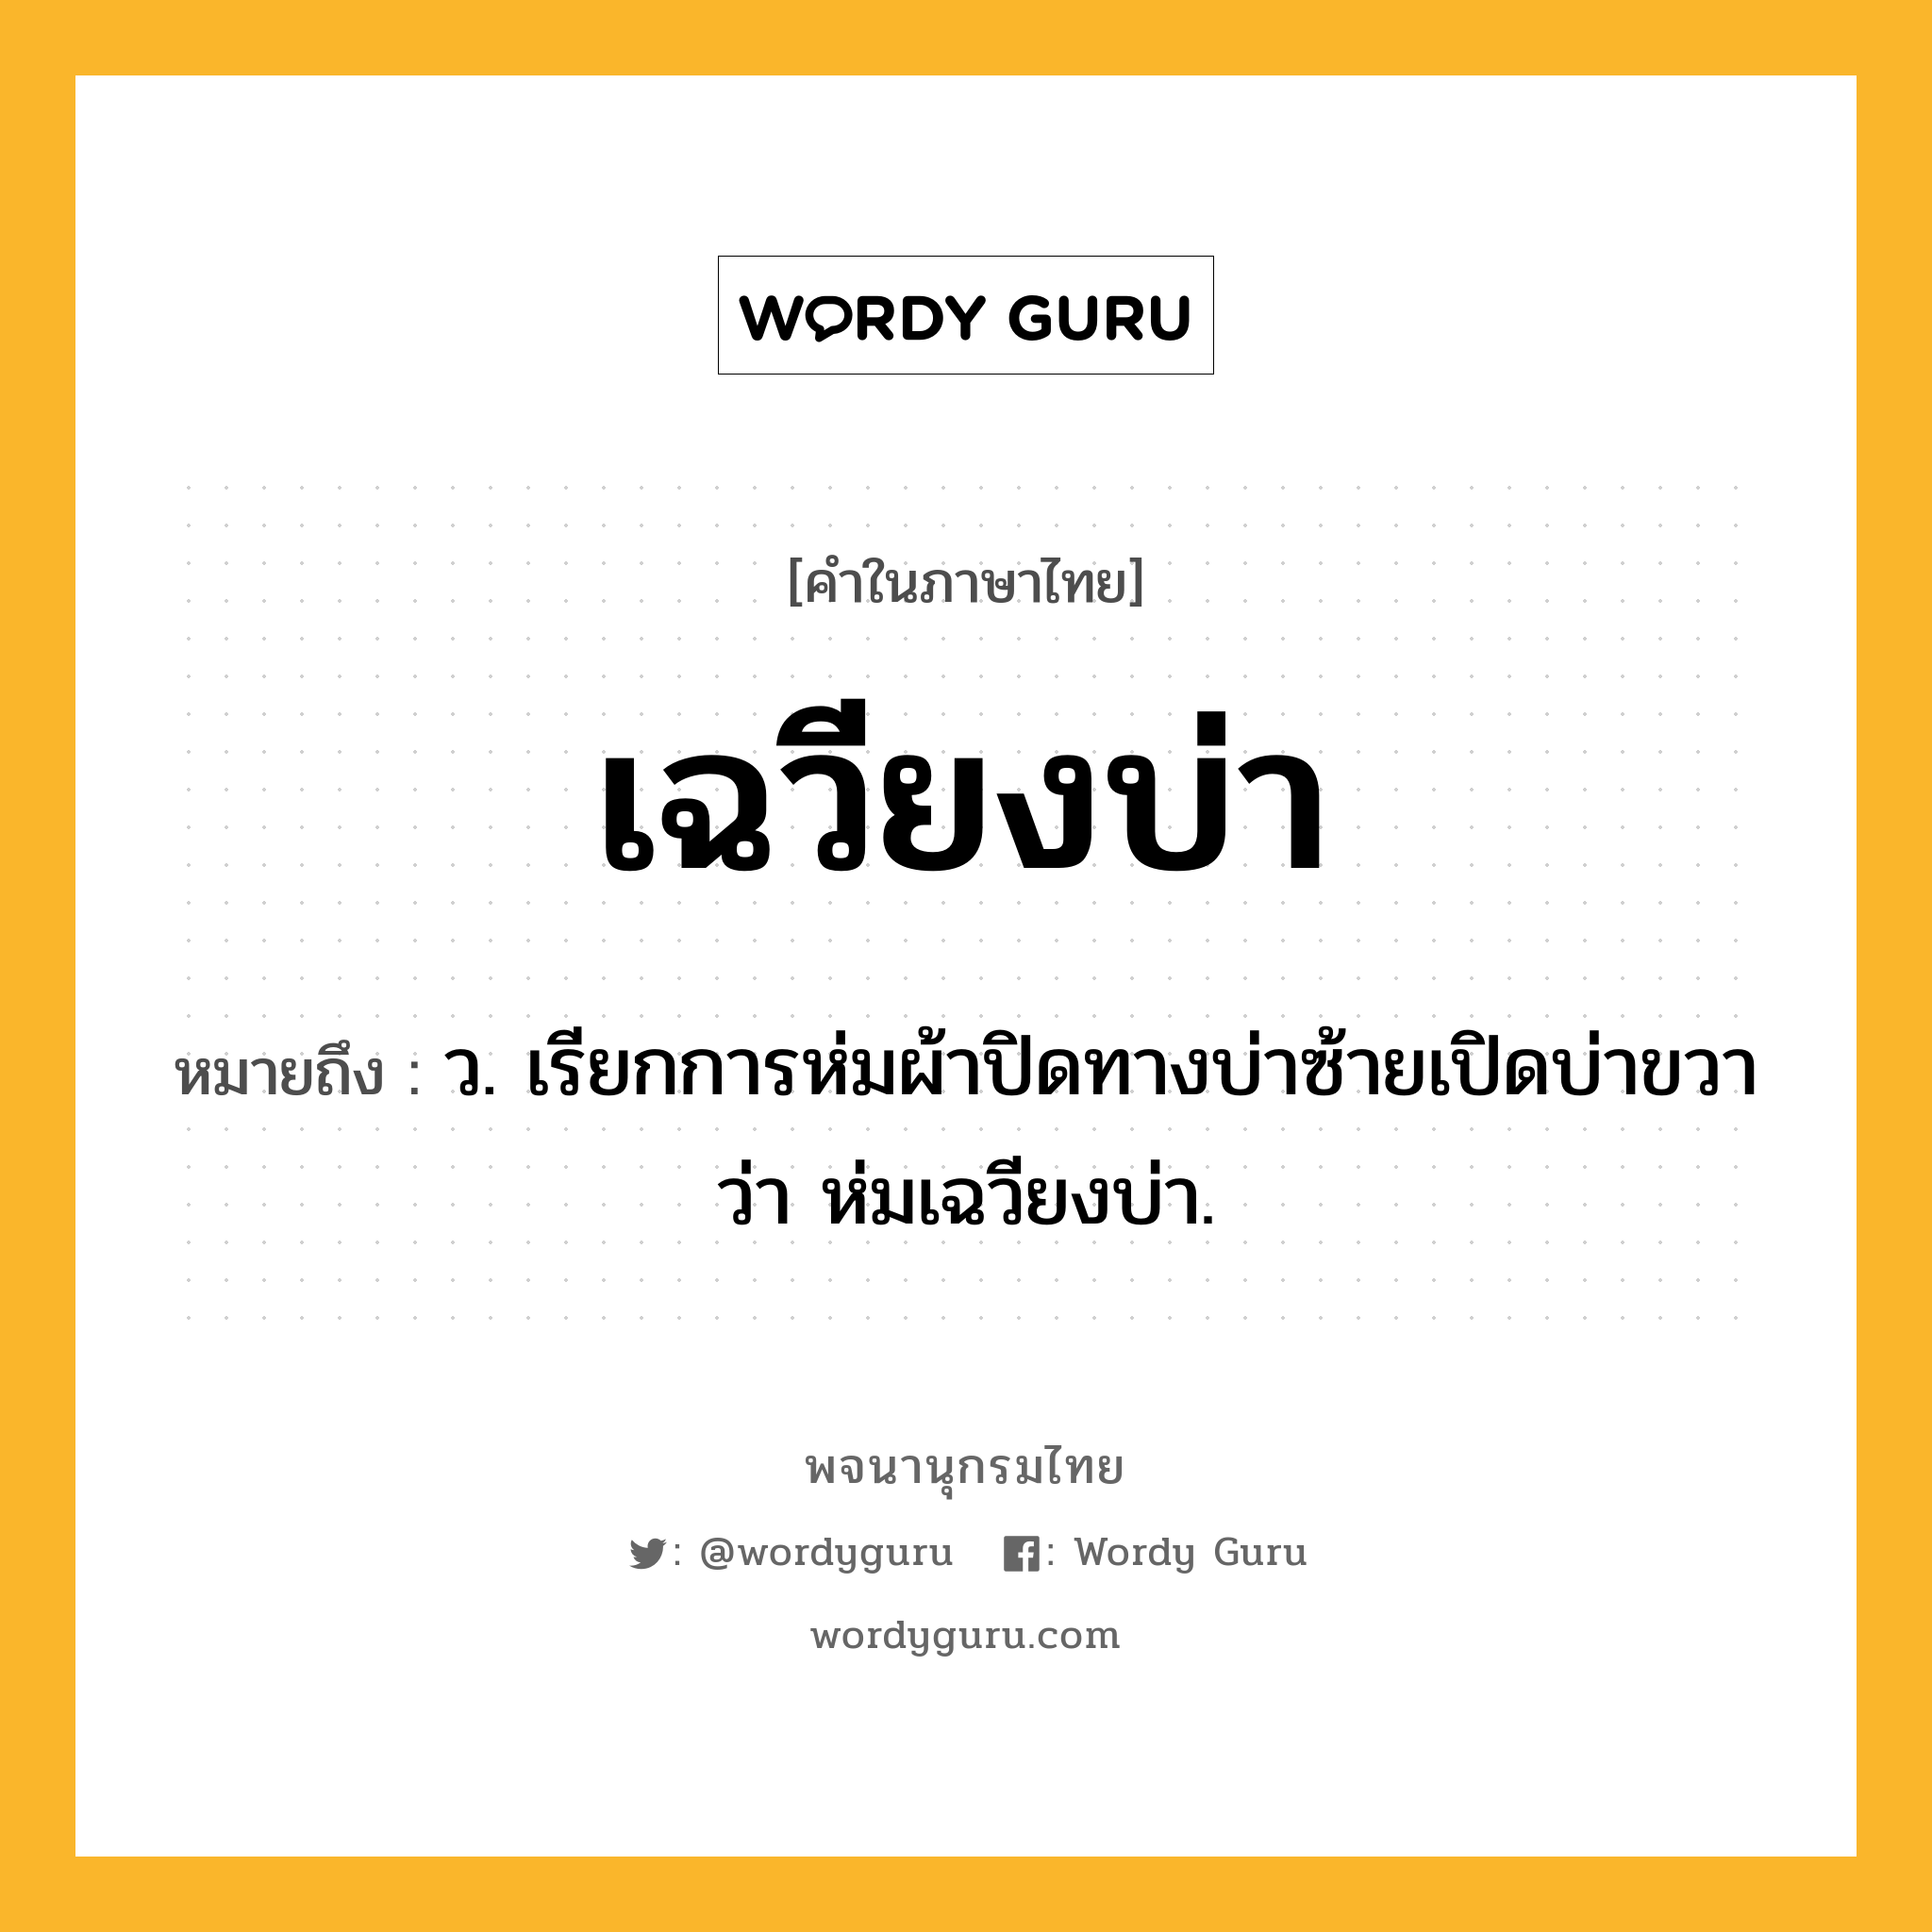 เฉวียงบ่า หมายถึงอะไร?, คำในภาษาไทย เฉวียงบ่า หมายถึง ว. เรียกการห่มผ้าปิดทางบ่าซ้ายเปิดบ่าขวาว่า ห่มเฉวียงบ่า.